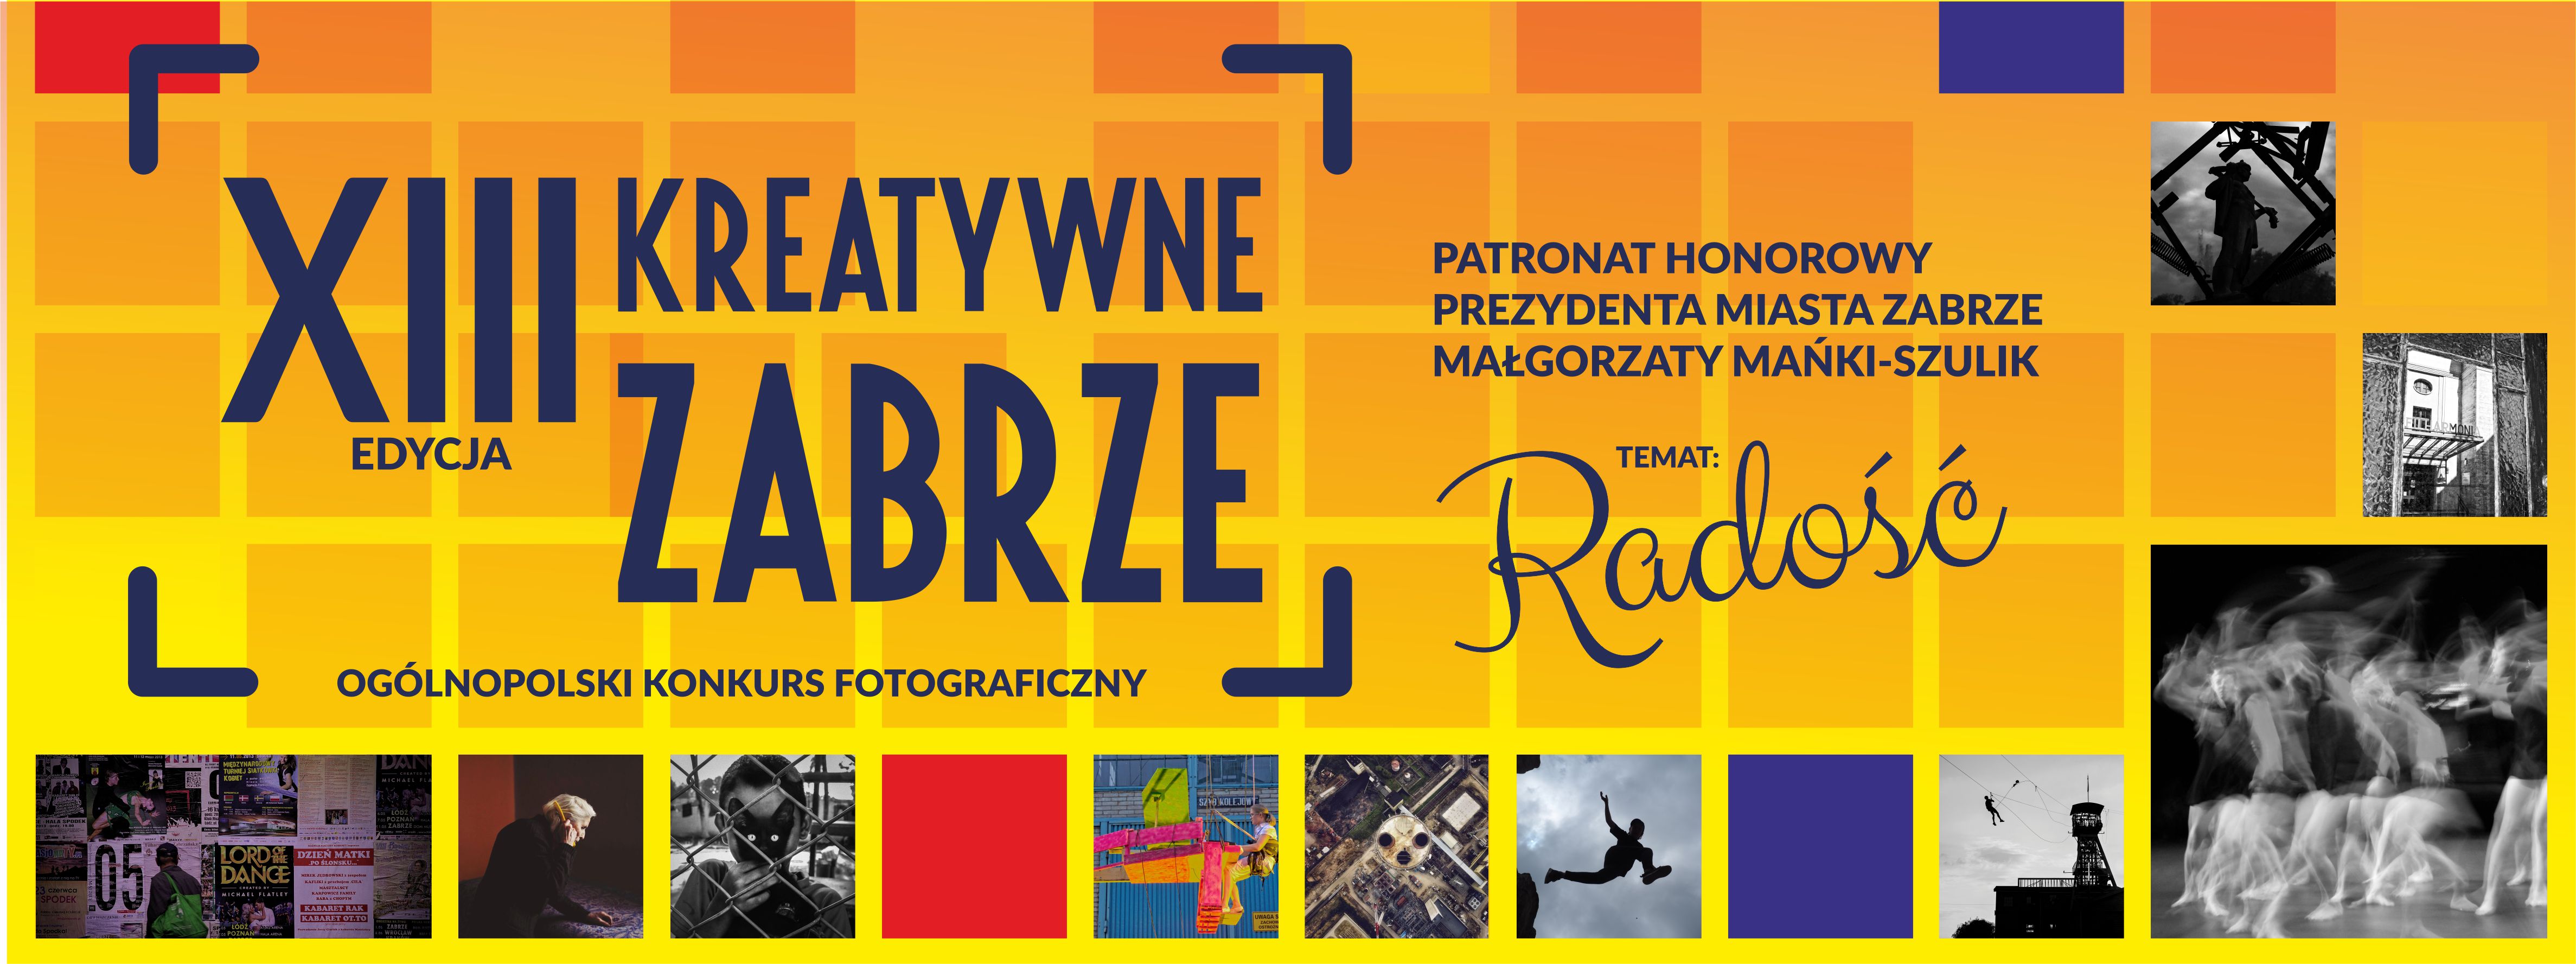 XIII Ogólnopolski Konkurs Fotograficzny Kreatywne Zabrze - baner promujący konkurs. Znajduje się na nim nazwa wydarzenia, temat konkursu (